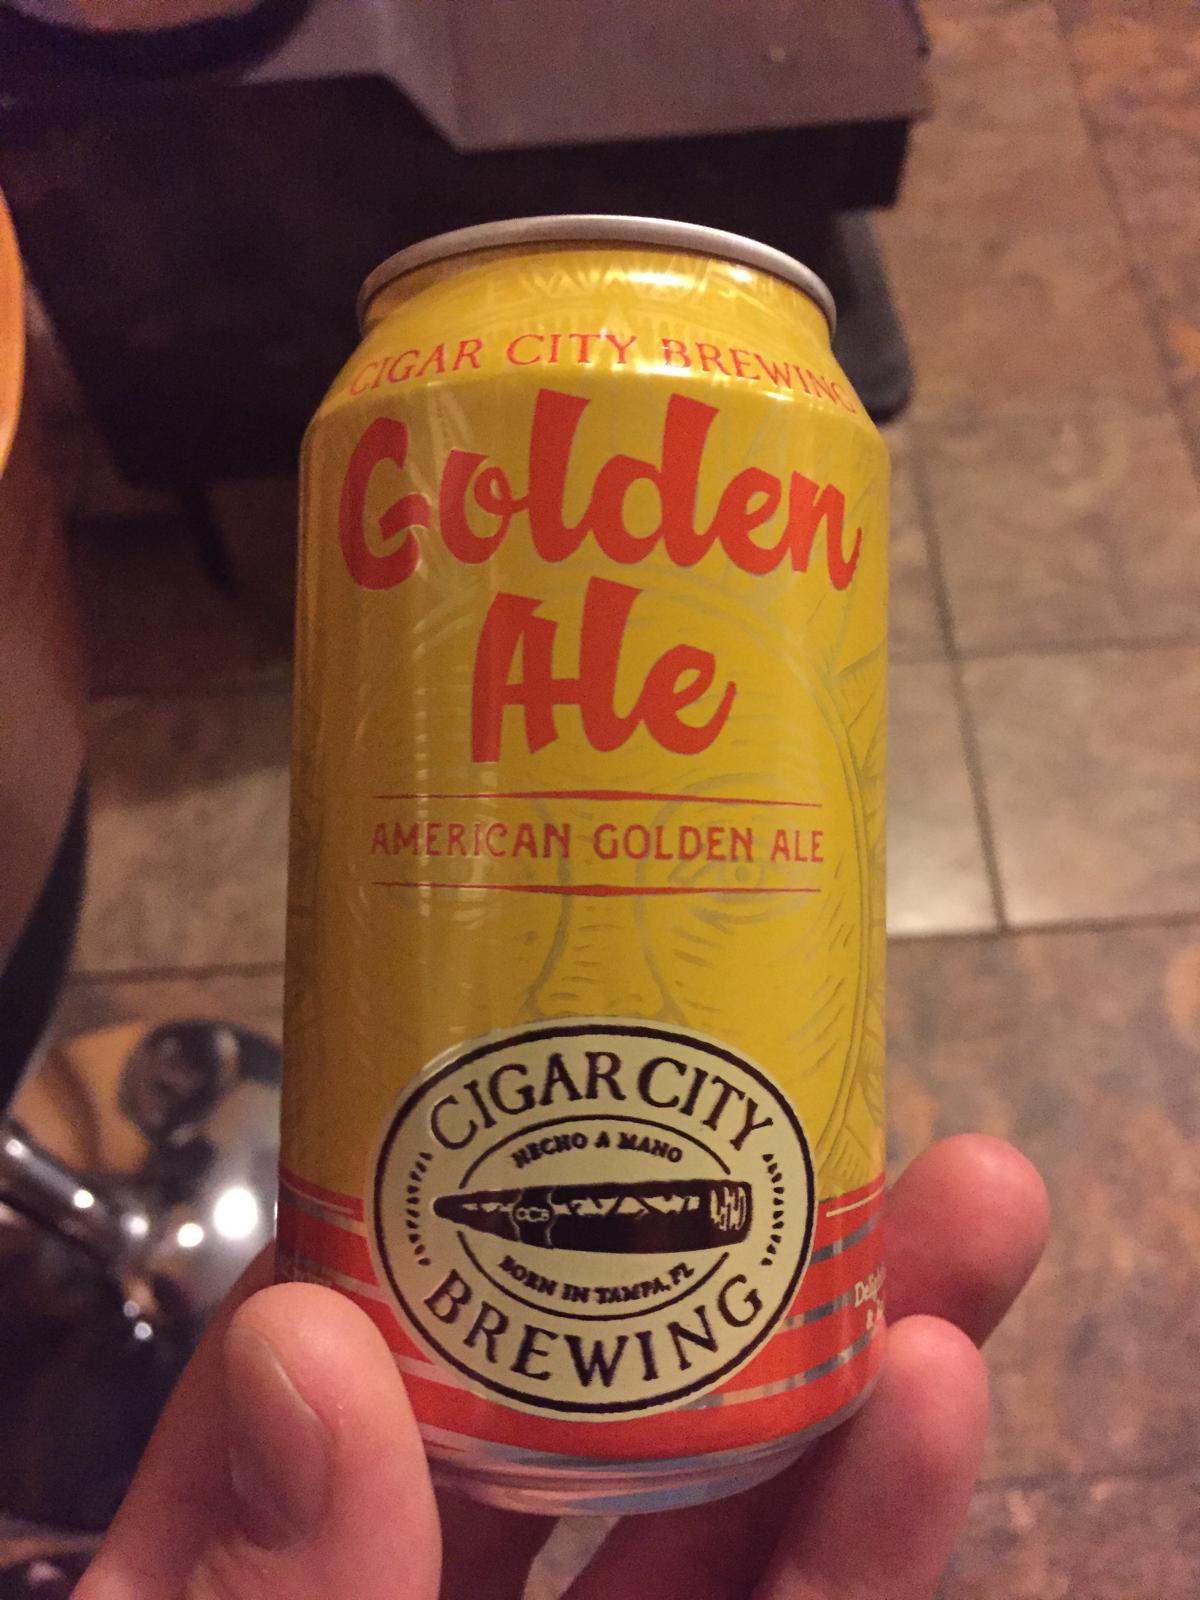 Golden Ale